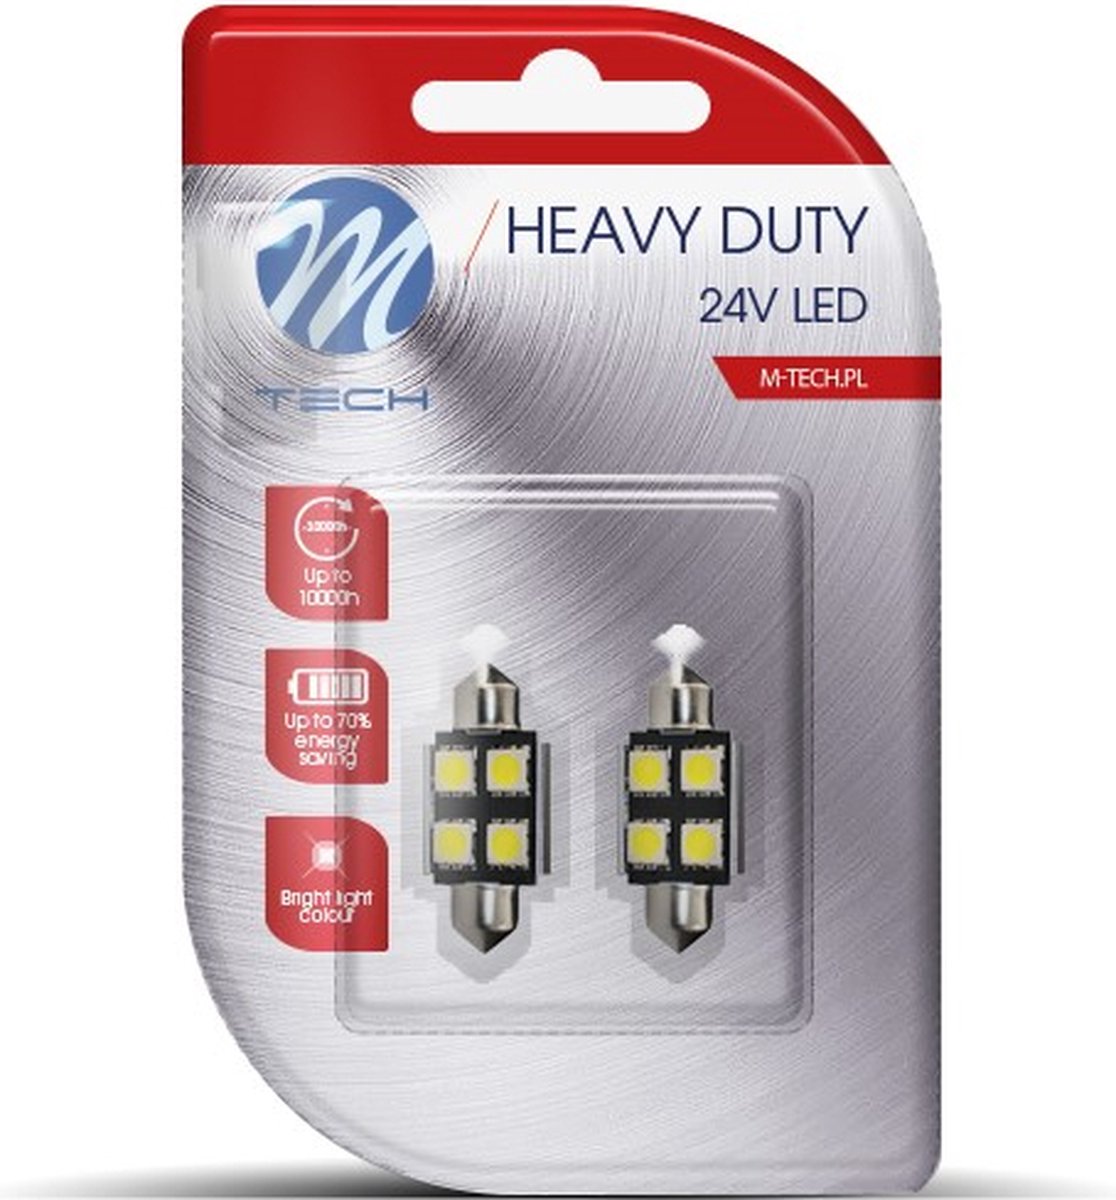 M-Tech LED C5W / C10W 24V - 36MM - Heavy Duty - 4x Led diode - Wit - Set